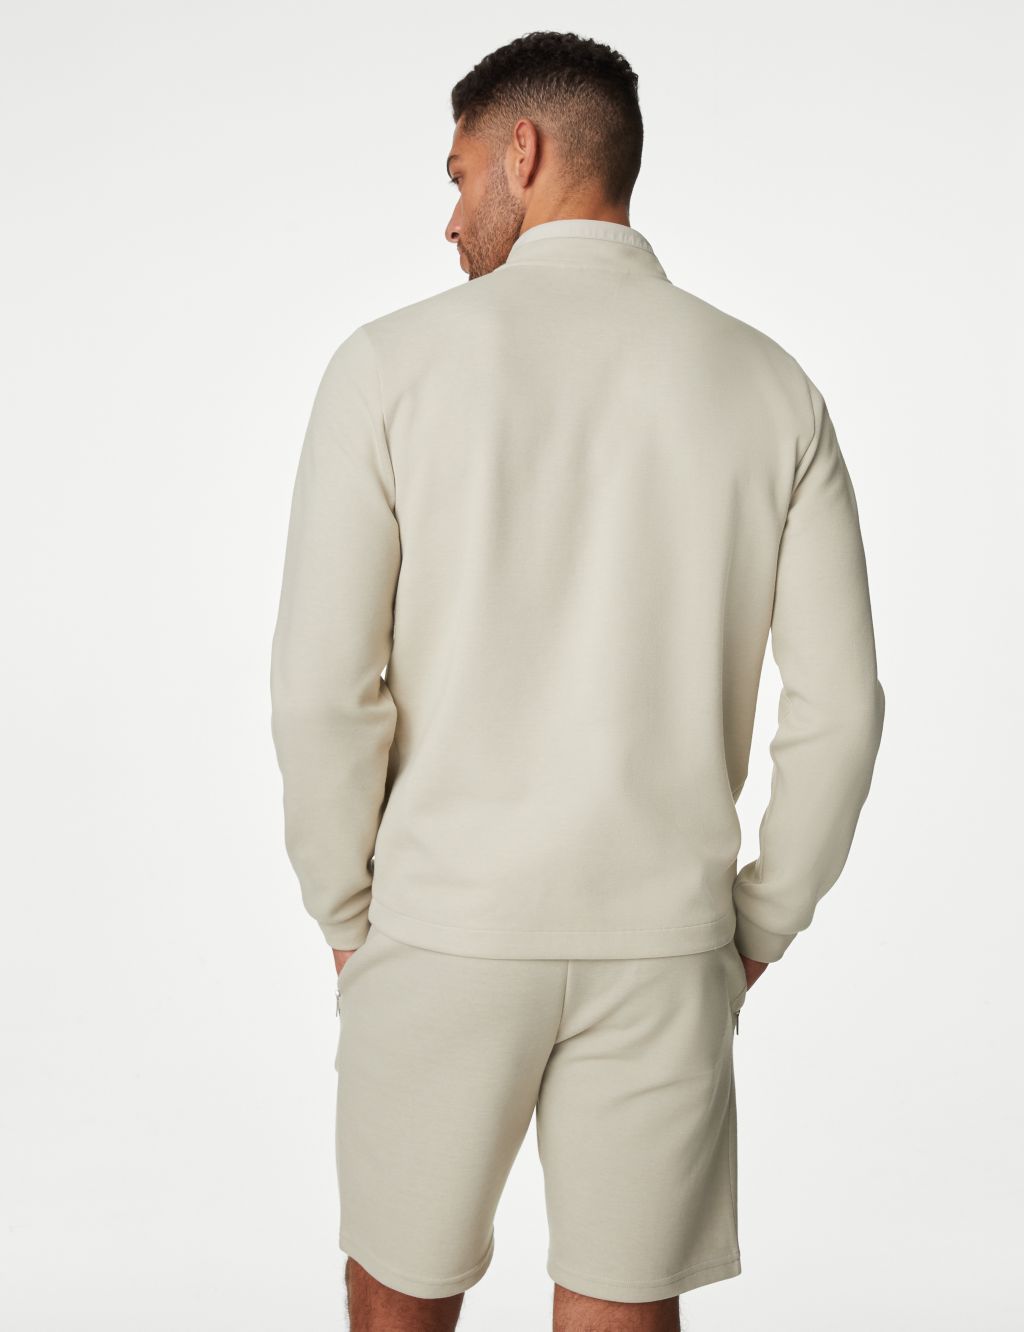 Cotton Blend Half Zip Sweatshirt image 4